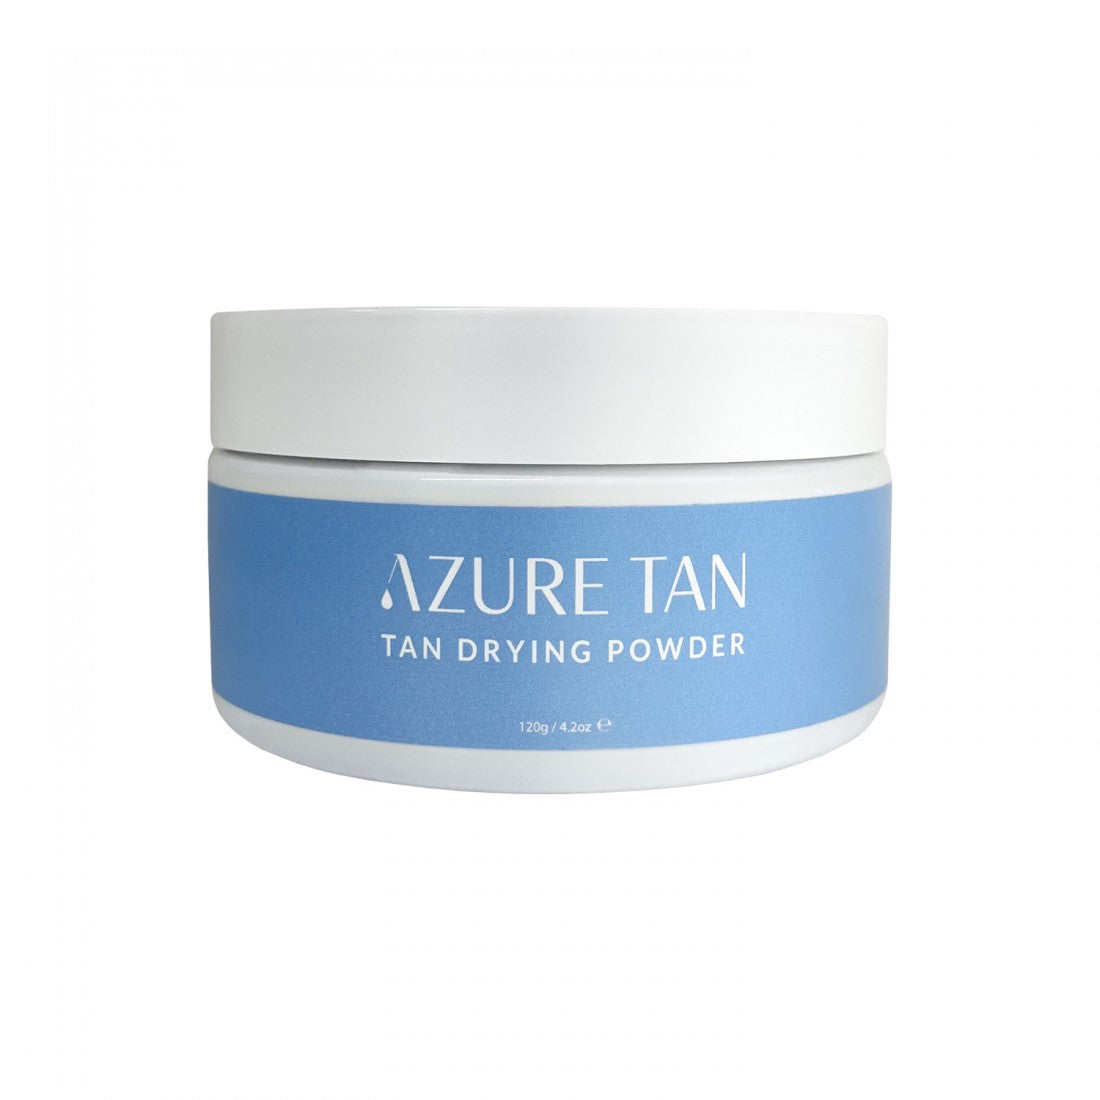 Azure Tan | Tan drying powder